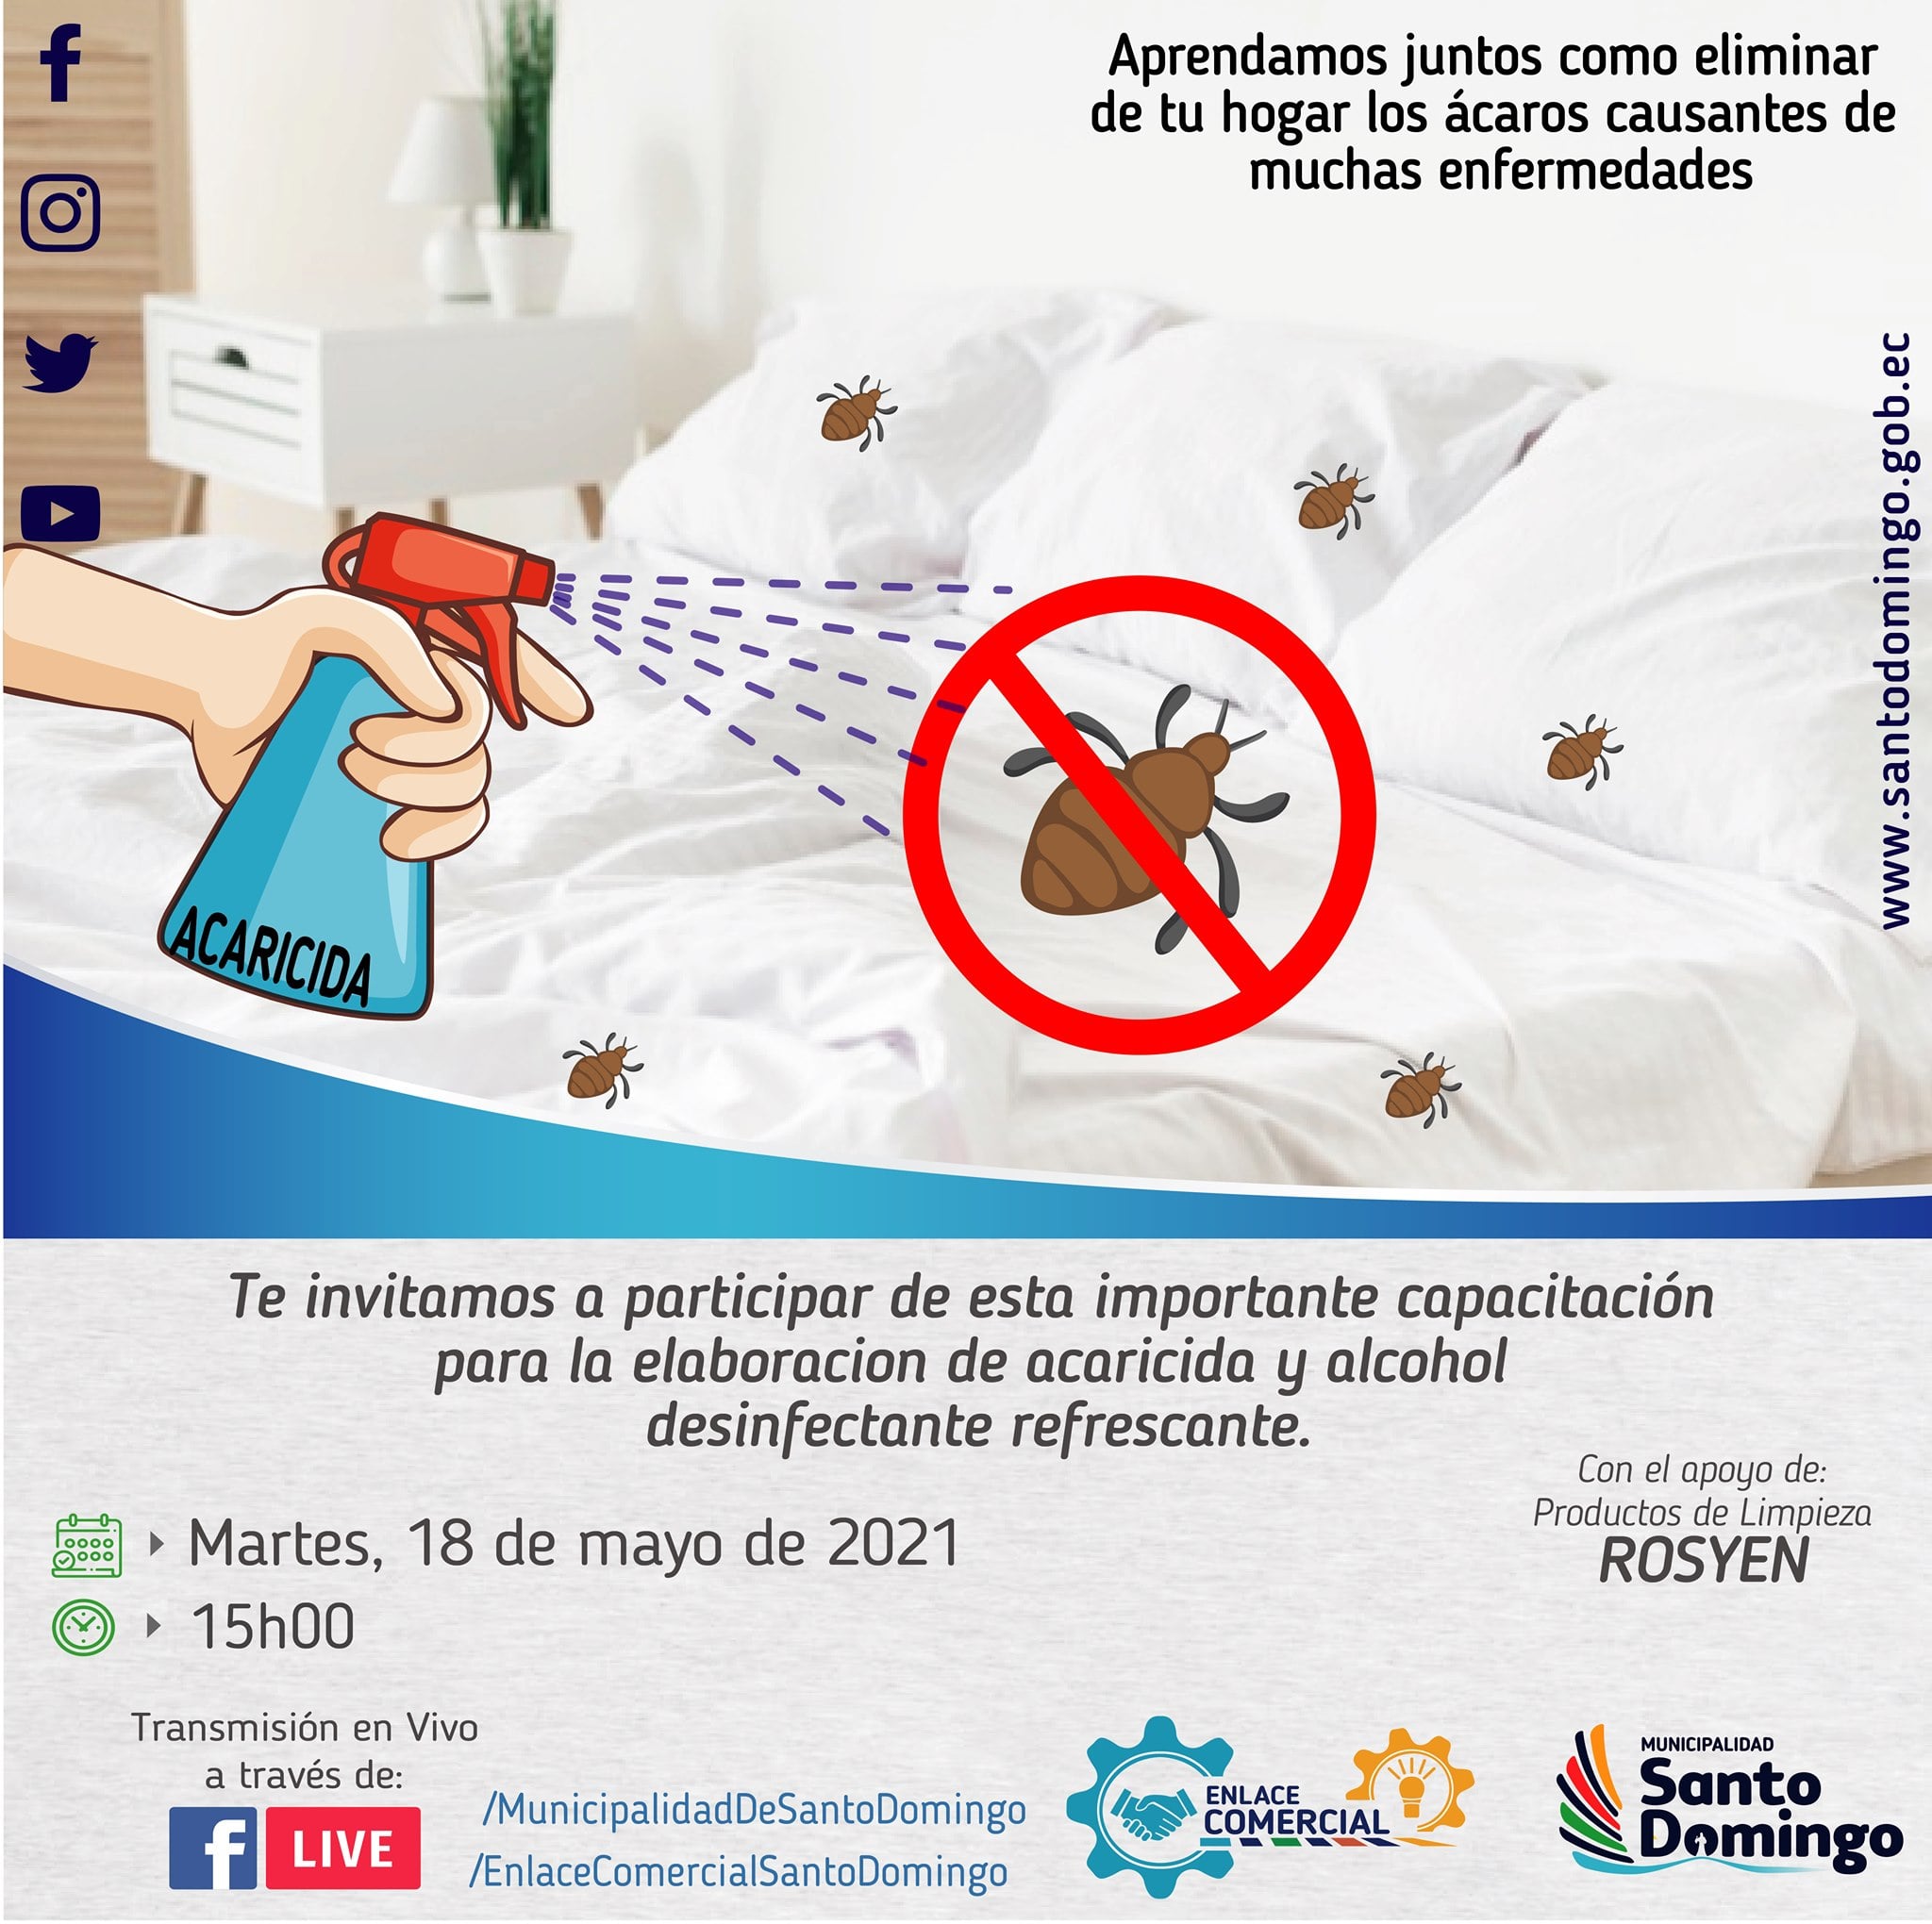 Municipalidad de Santo Domingo on X: Si deseas conocer como eliminar ácaros  que producen alergia y problemas de salud, además elaborar productos de  limpieza, desinfectantes refrescantes como el menticol entre otros, esta